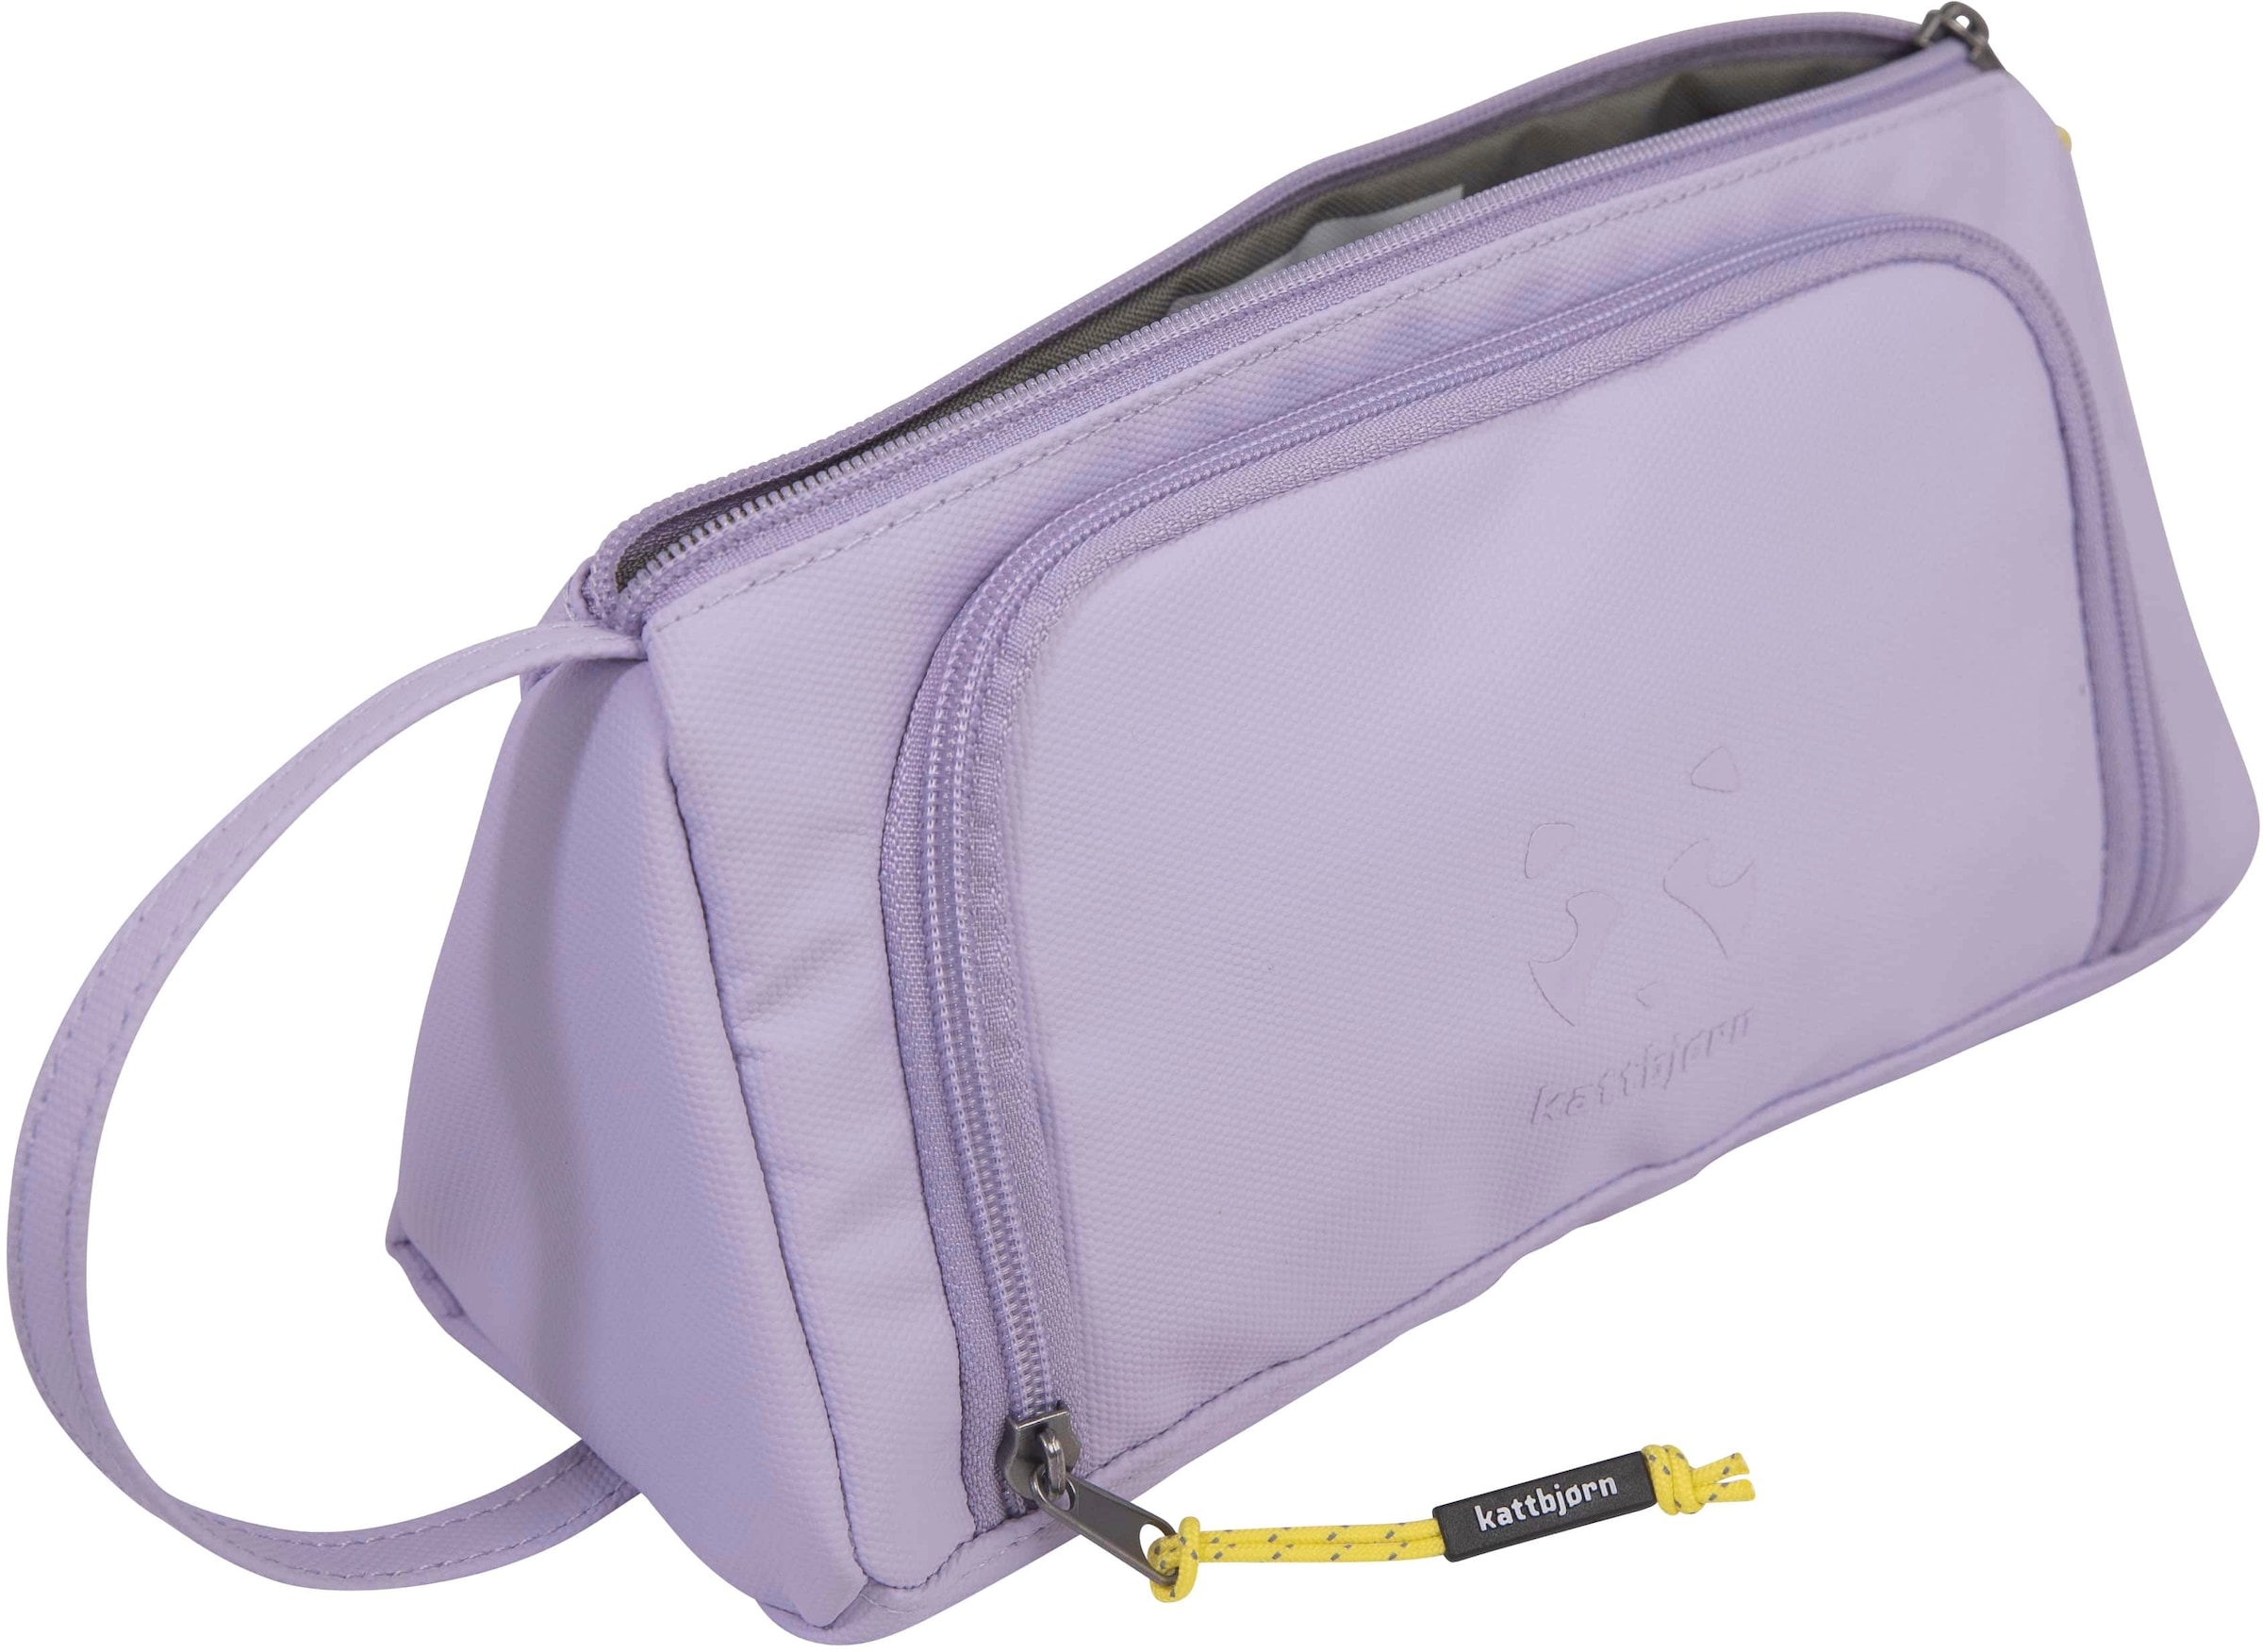 KATTBJØRN Federtasche »Swag Bag, Purple Power«, alle Innen- und Außenstoffe aus recyceltem PET